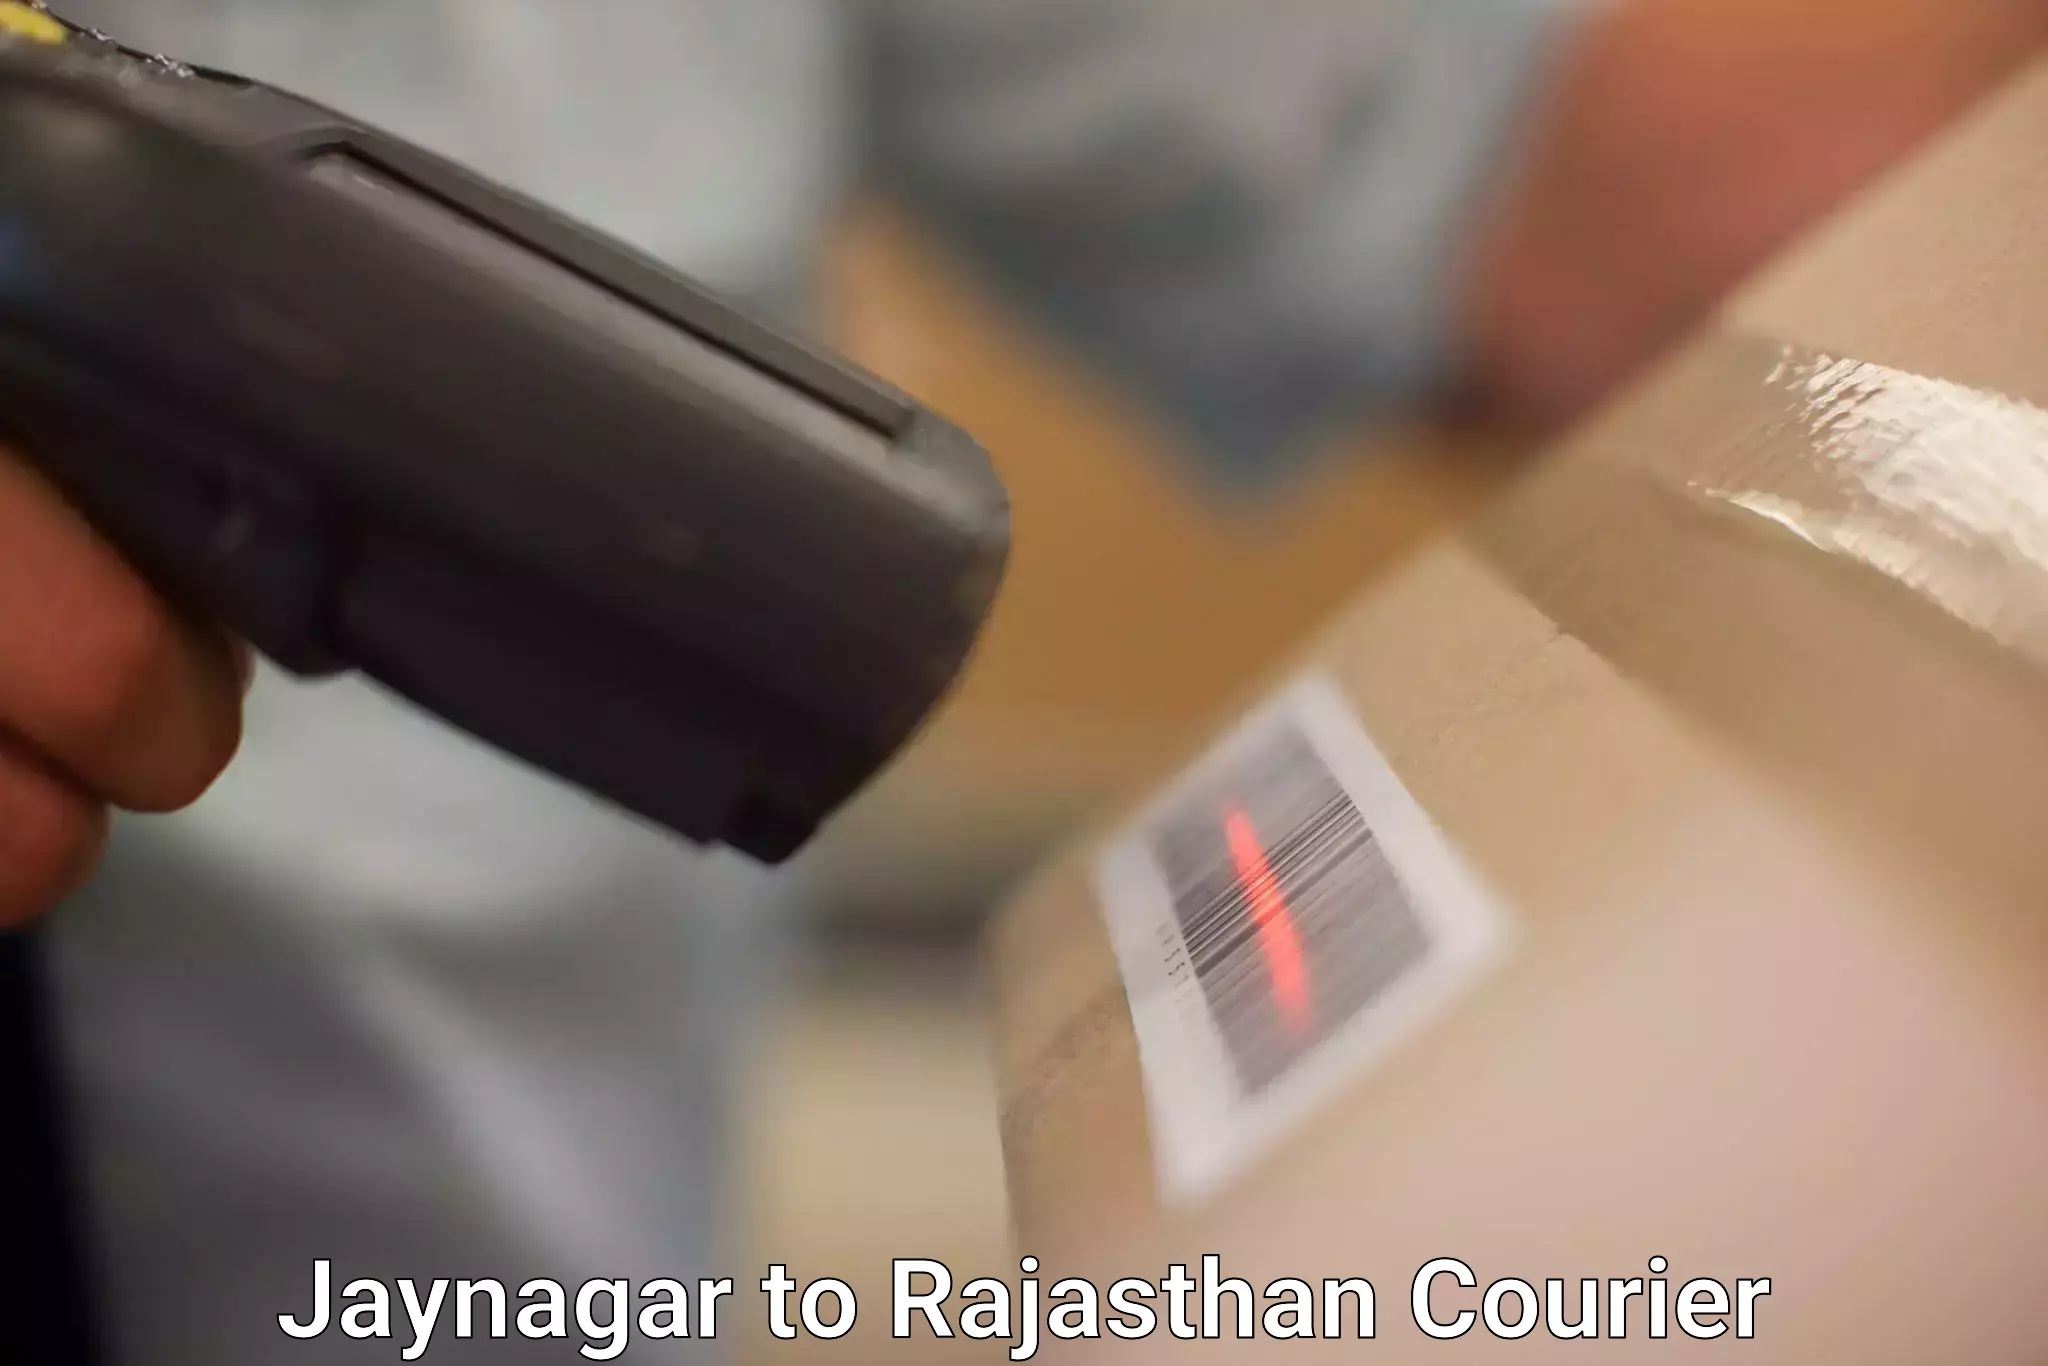 Courier service innovation Jaynagar to Tibbi